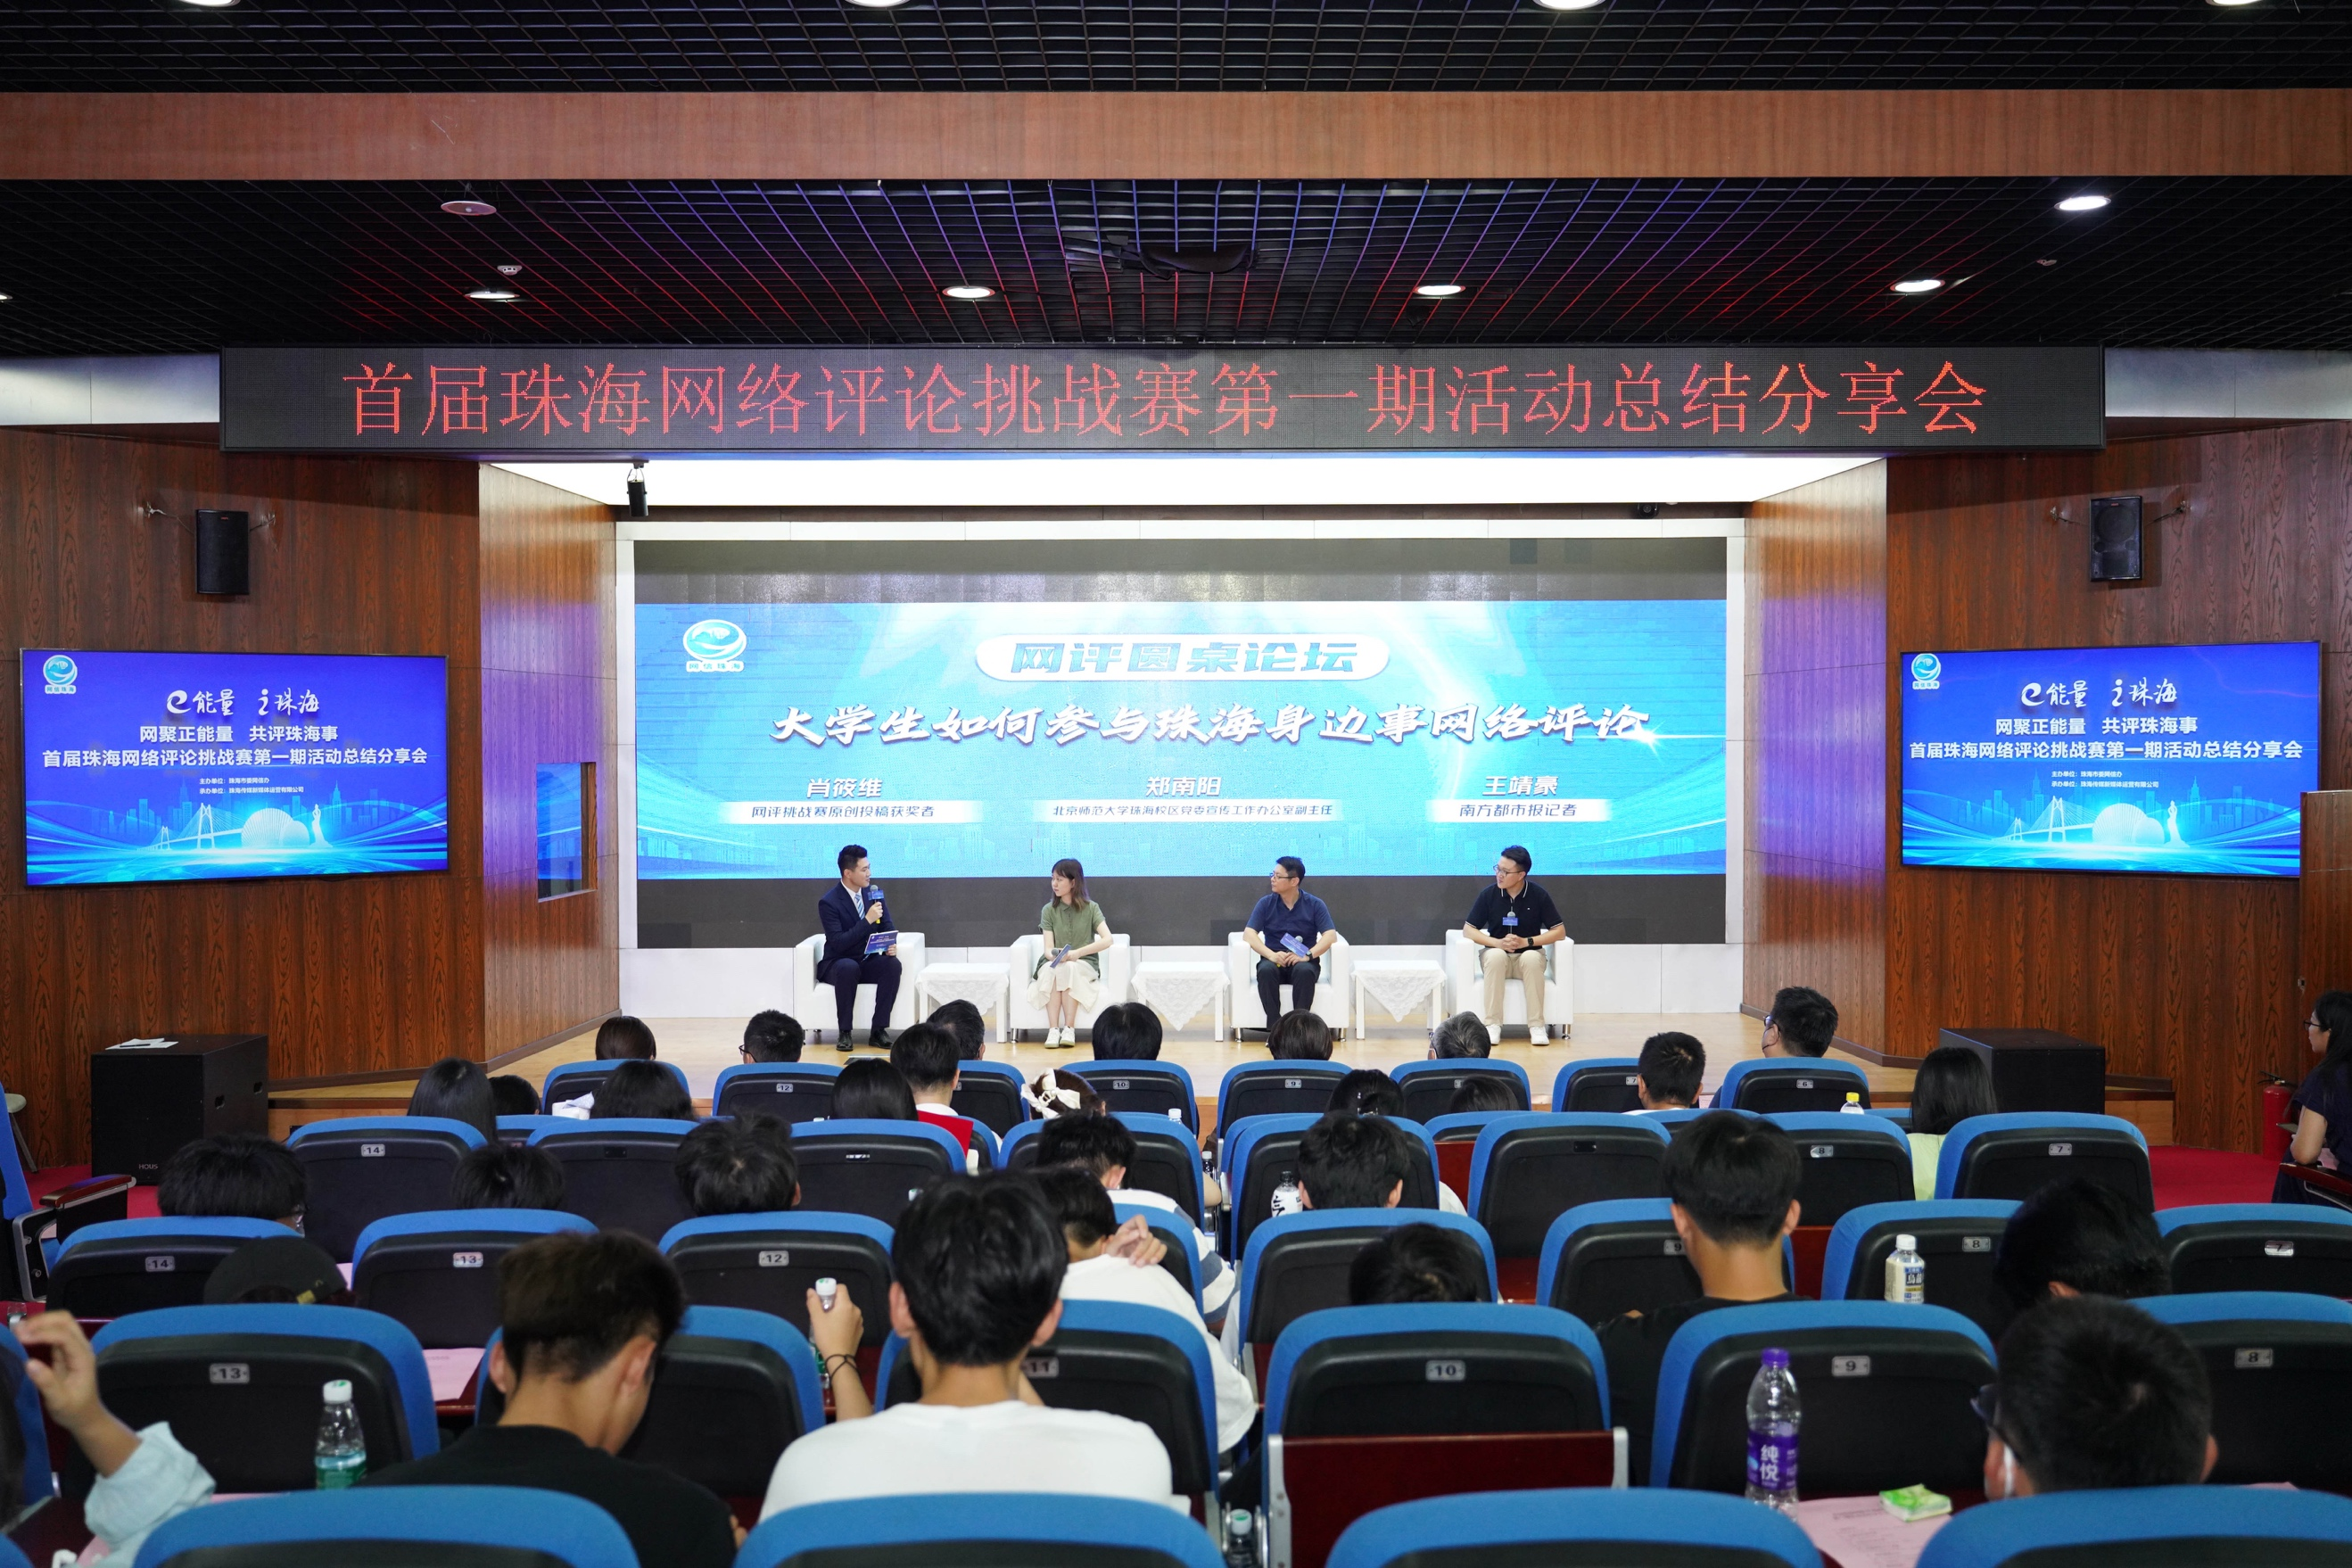 首届珠海网络评论挑战赛第一期活动总结分享会举行